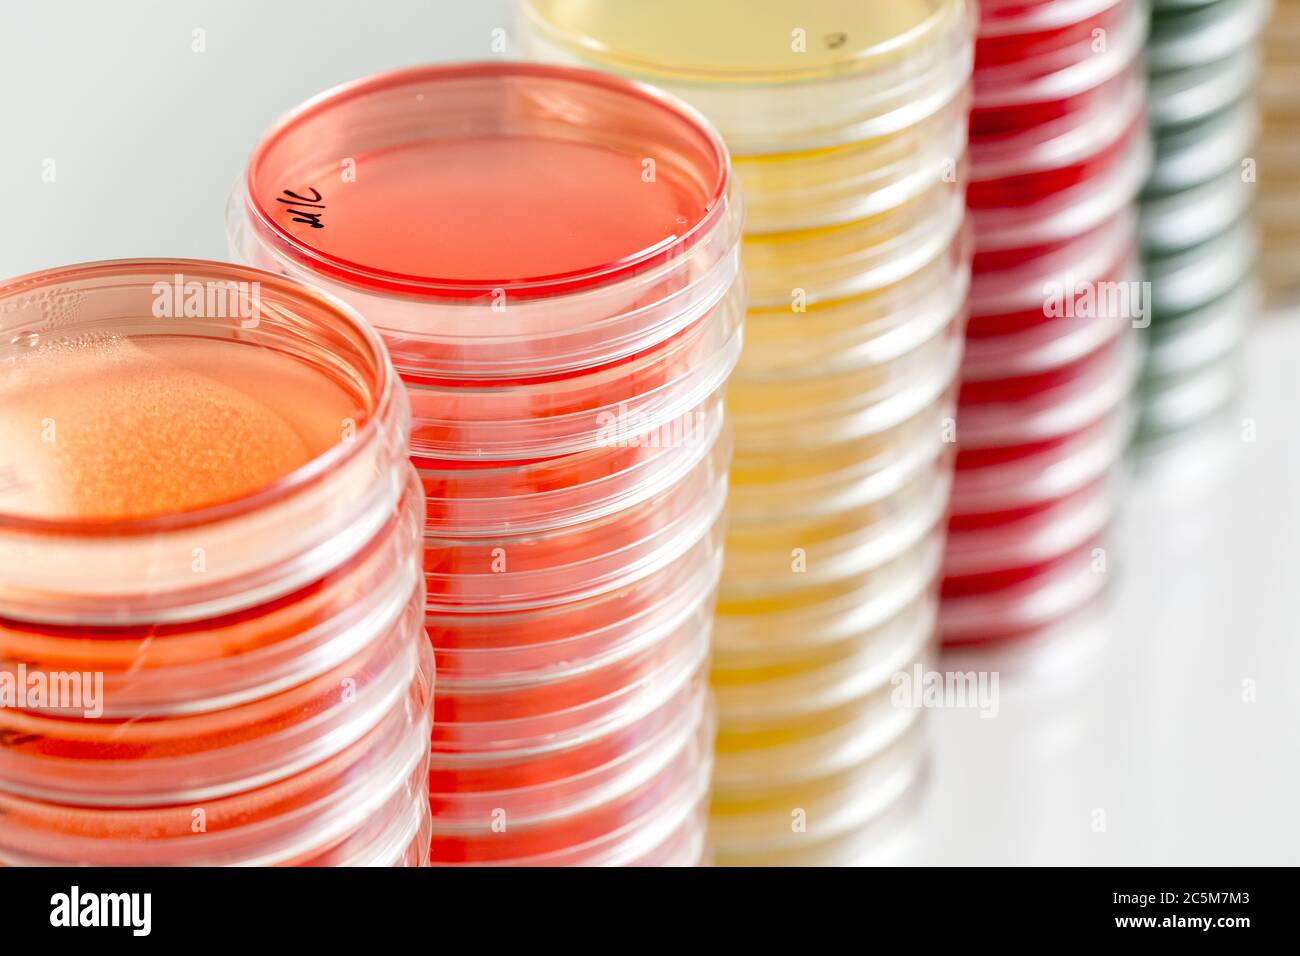 Rote und gelbe Petrischalen stapeln sich im Mikrobiologielabor auf dem Hintergrund des Bakteriologielabors. Stockfoto